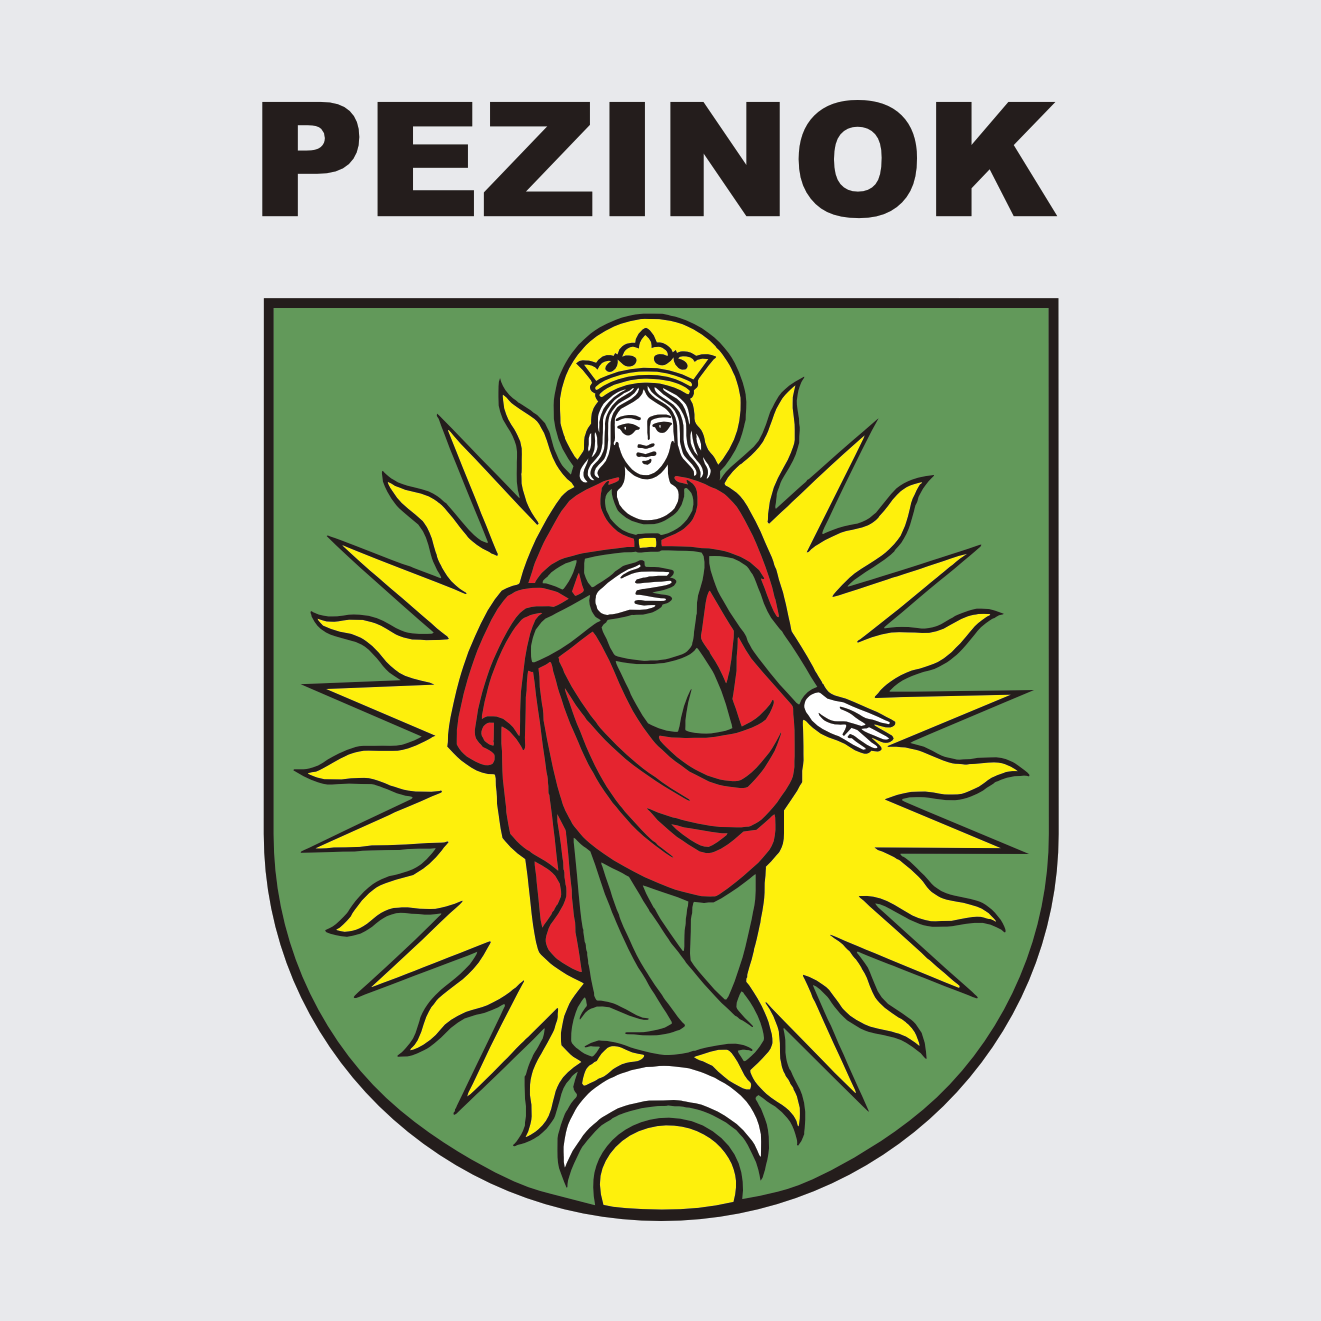 Mesto Pezinok